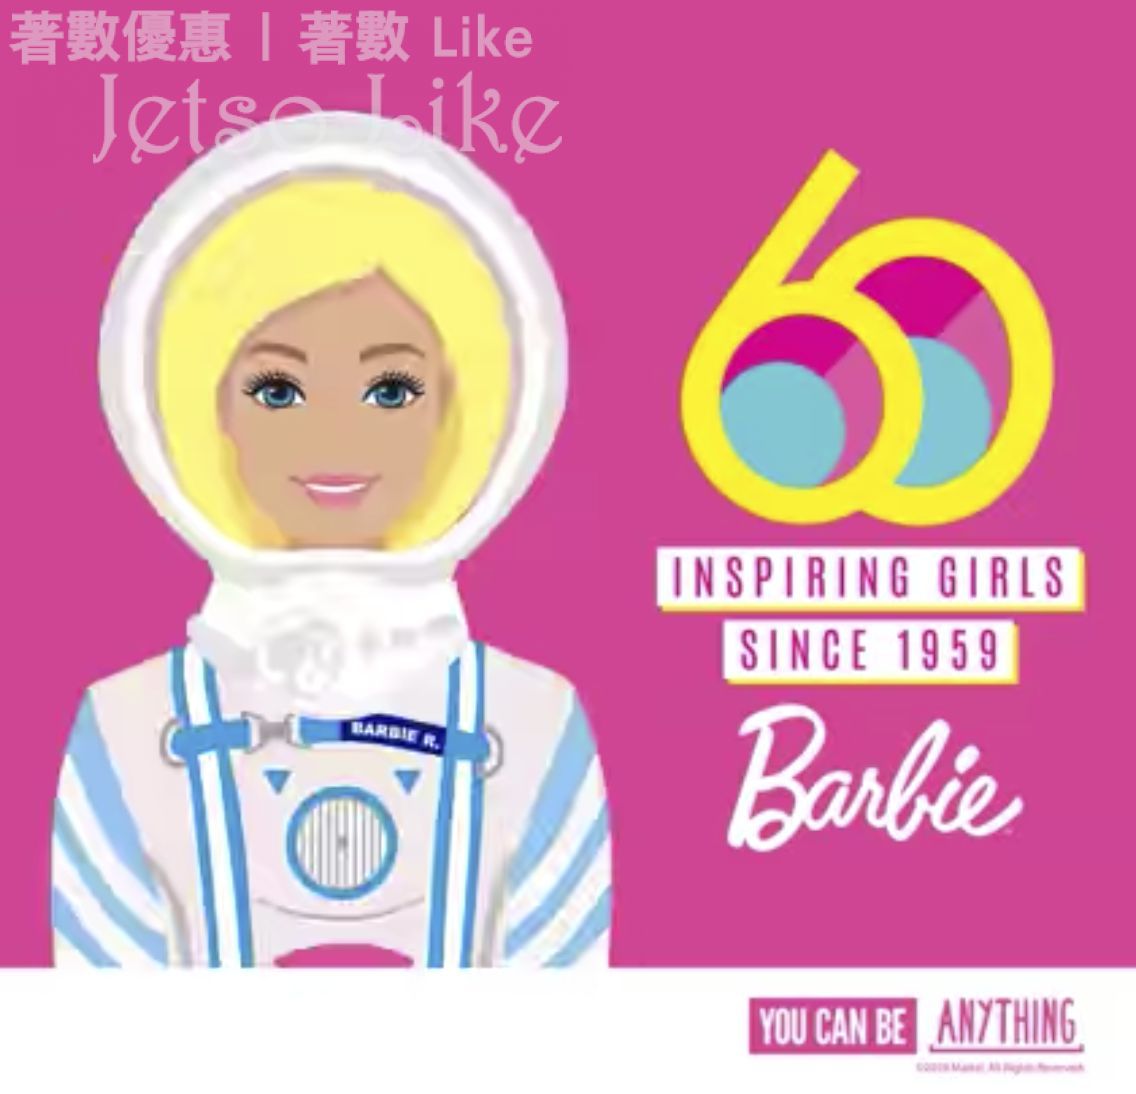 免費換領 Barbie YOU CAN BE ANYTHING 自拍活動 送 Barbie精美禮品